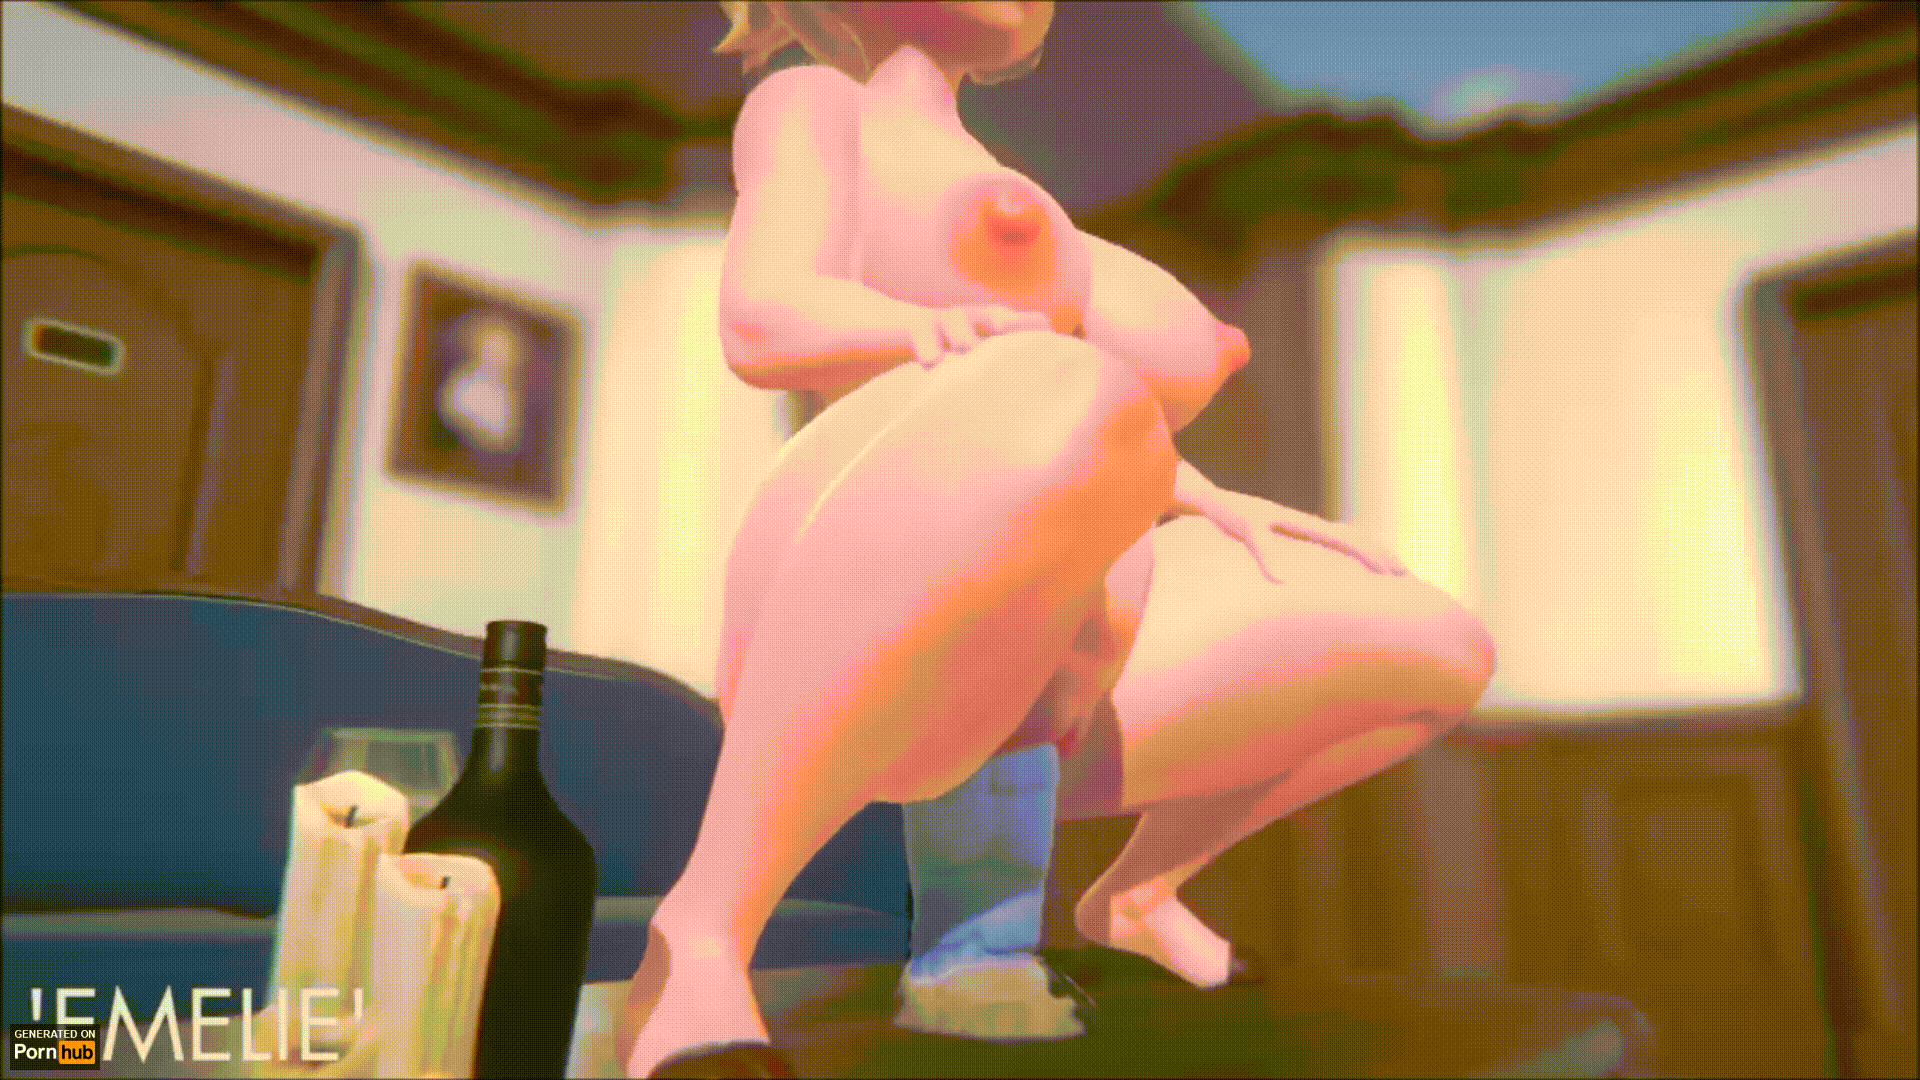 Pig Porn - Pig Girl Toy Pussy Fuck Porn Gif | Pornhub.com